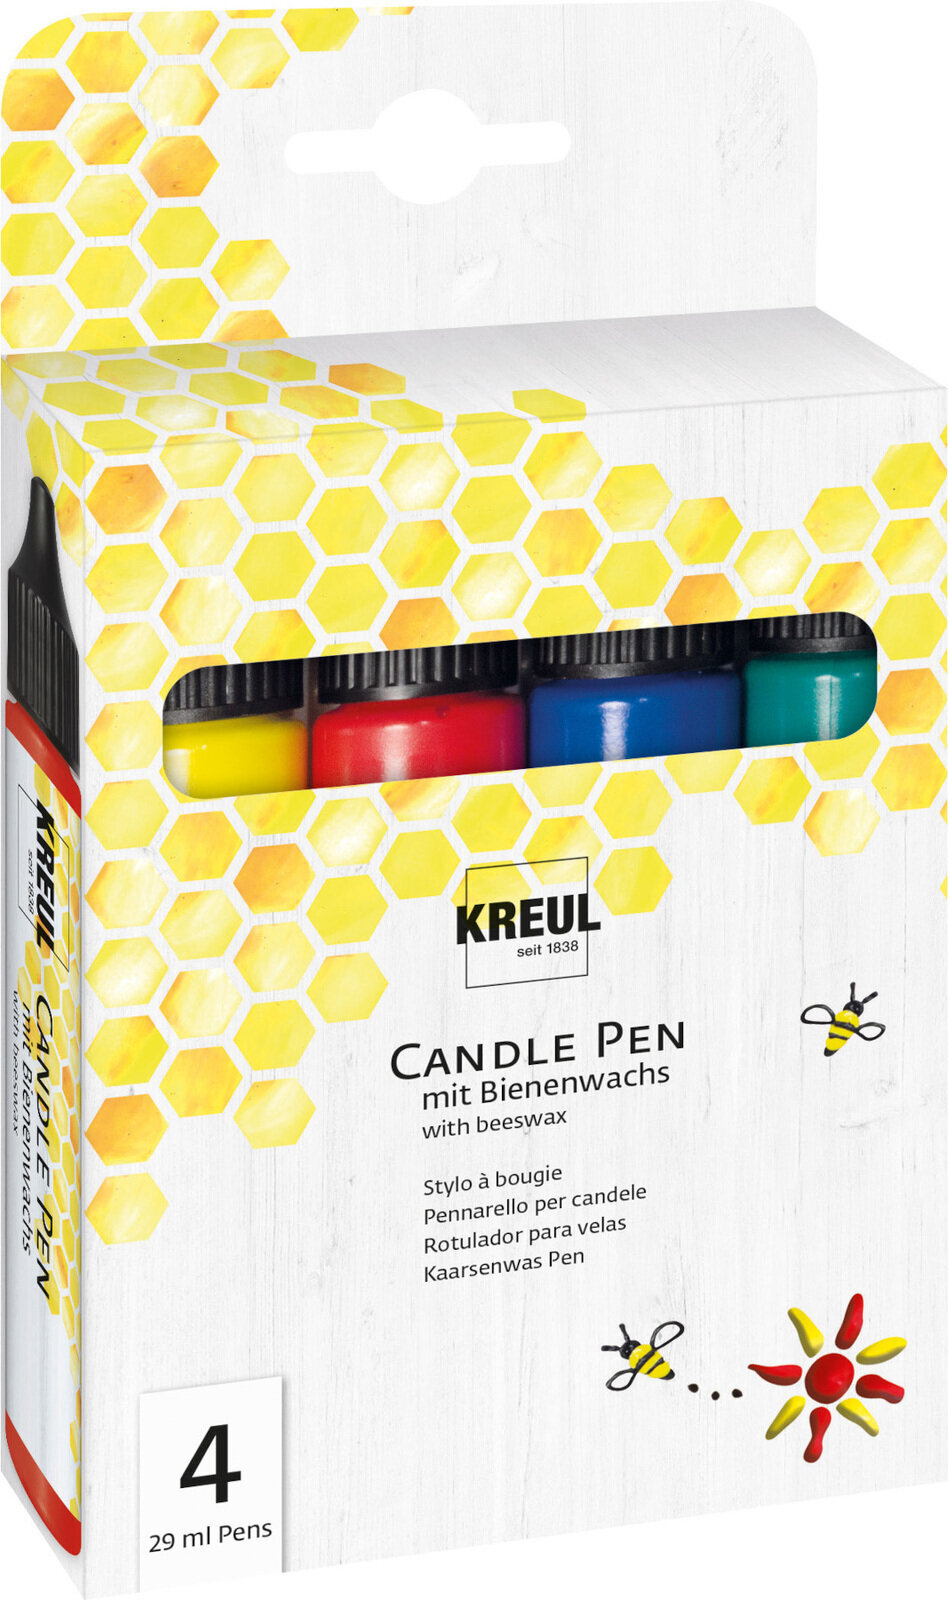 Filzstift Kreul Candle Pen